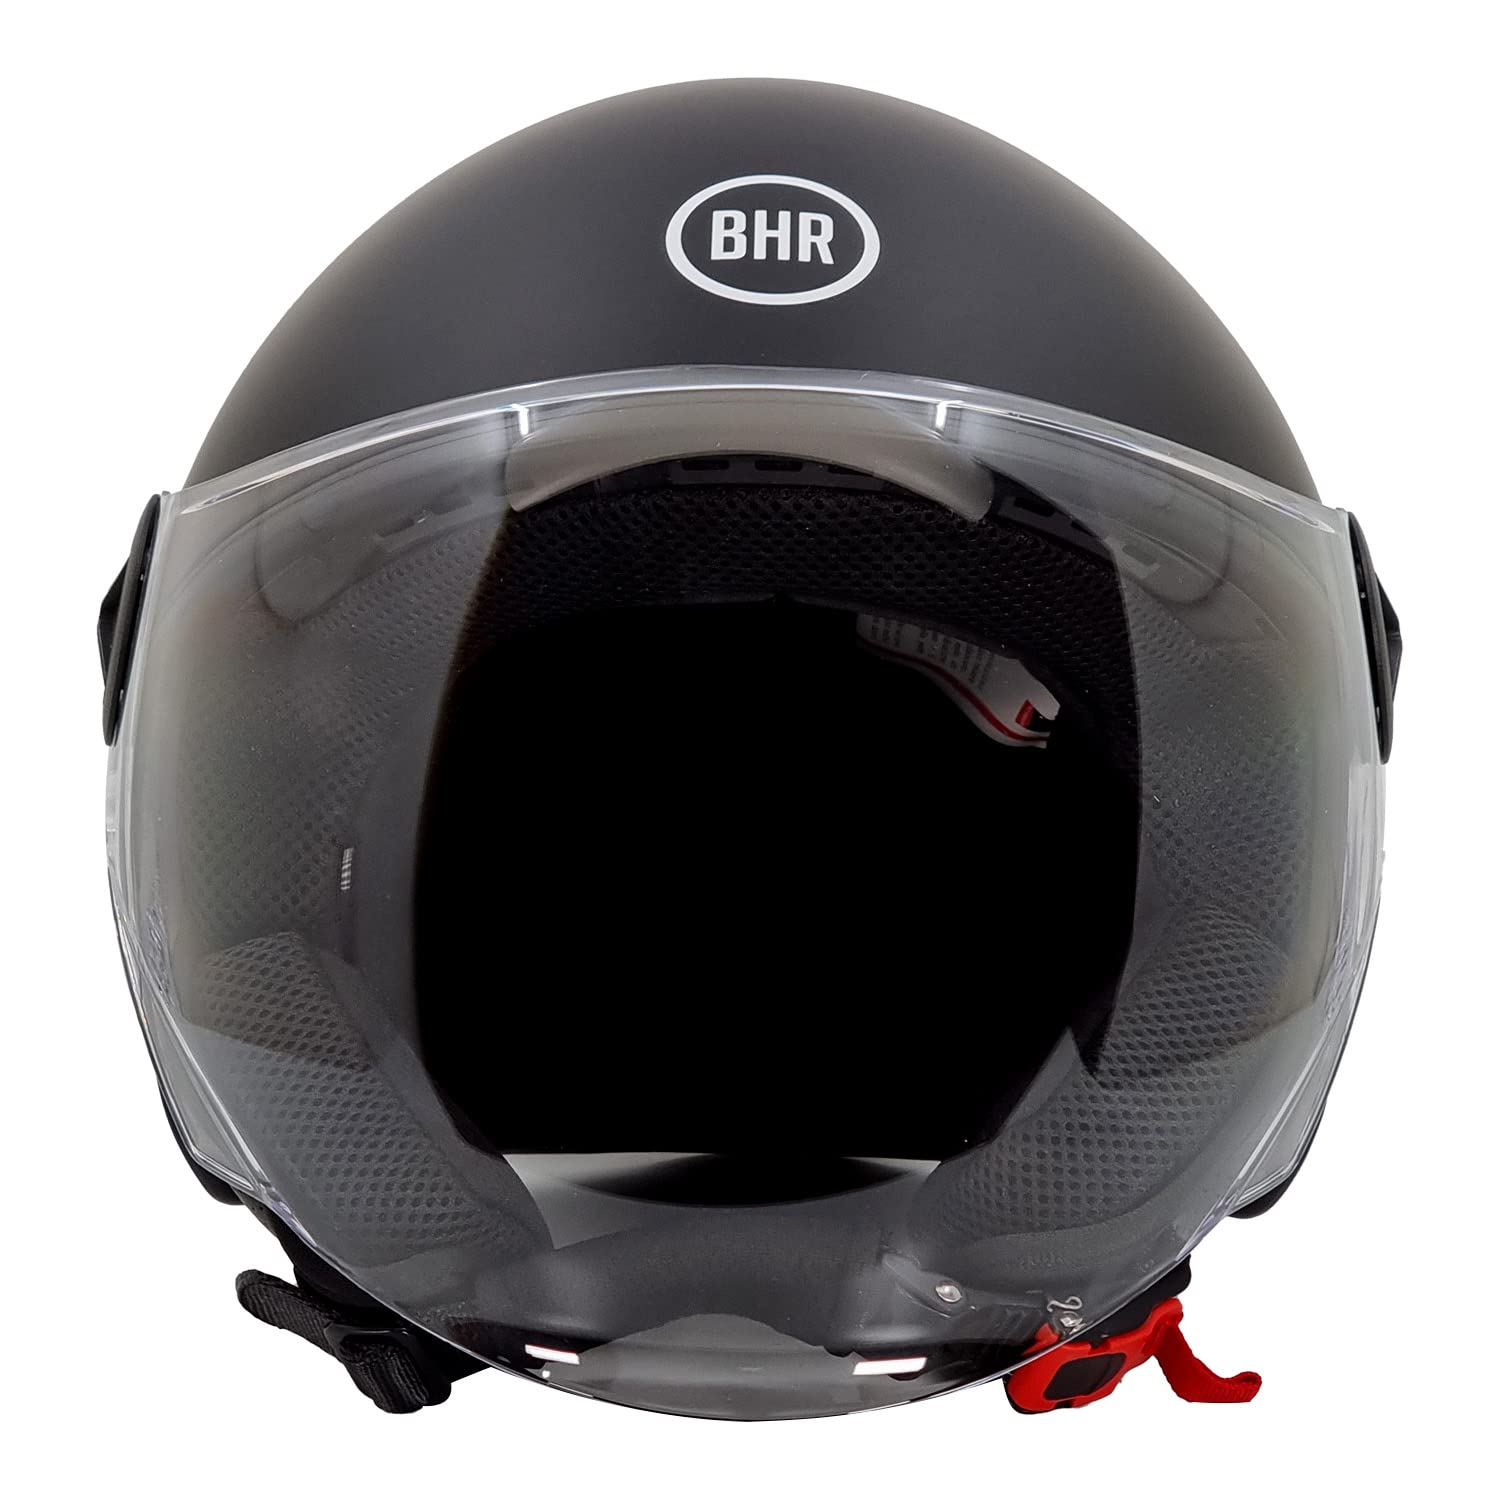 BHR Helm Demi-Jet 832 MINIMAL, Scooter Helm Zulassung ECE 22.06 Leicht und kompakt, ideal für die Stadt und unter der Sitzbank, Mattschwarz, XL von BHR